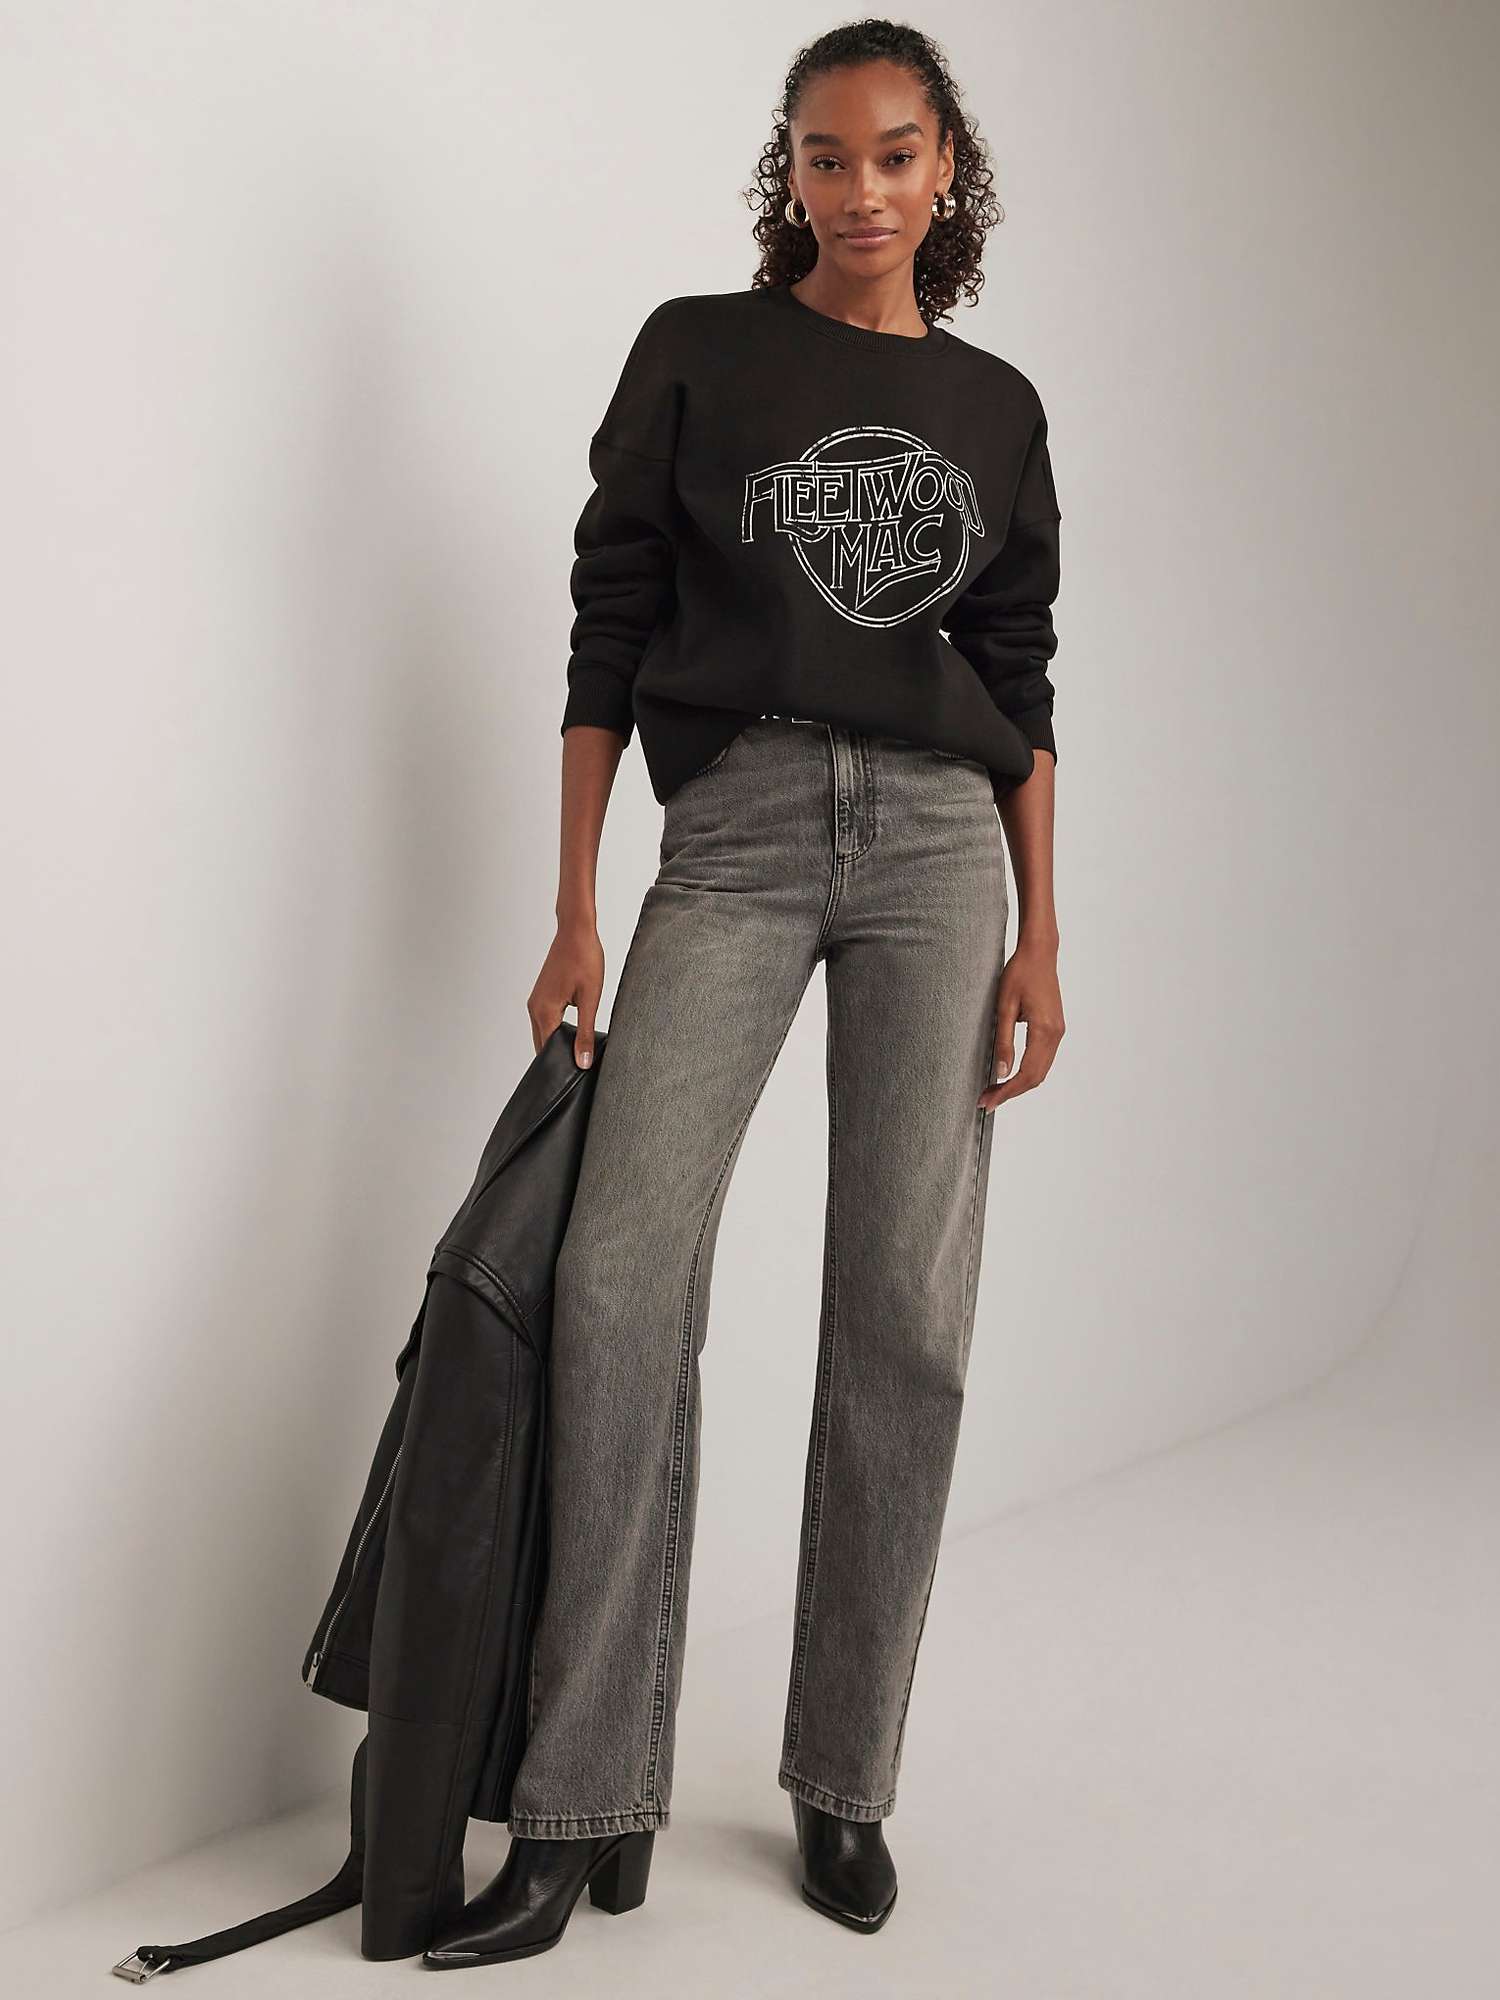 Buy Mint Velvet Fleetwood Mac Sweatshirt, Black Online at johnlewis.com